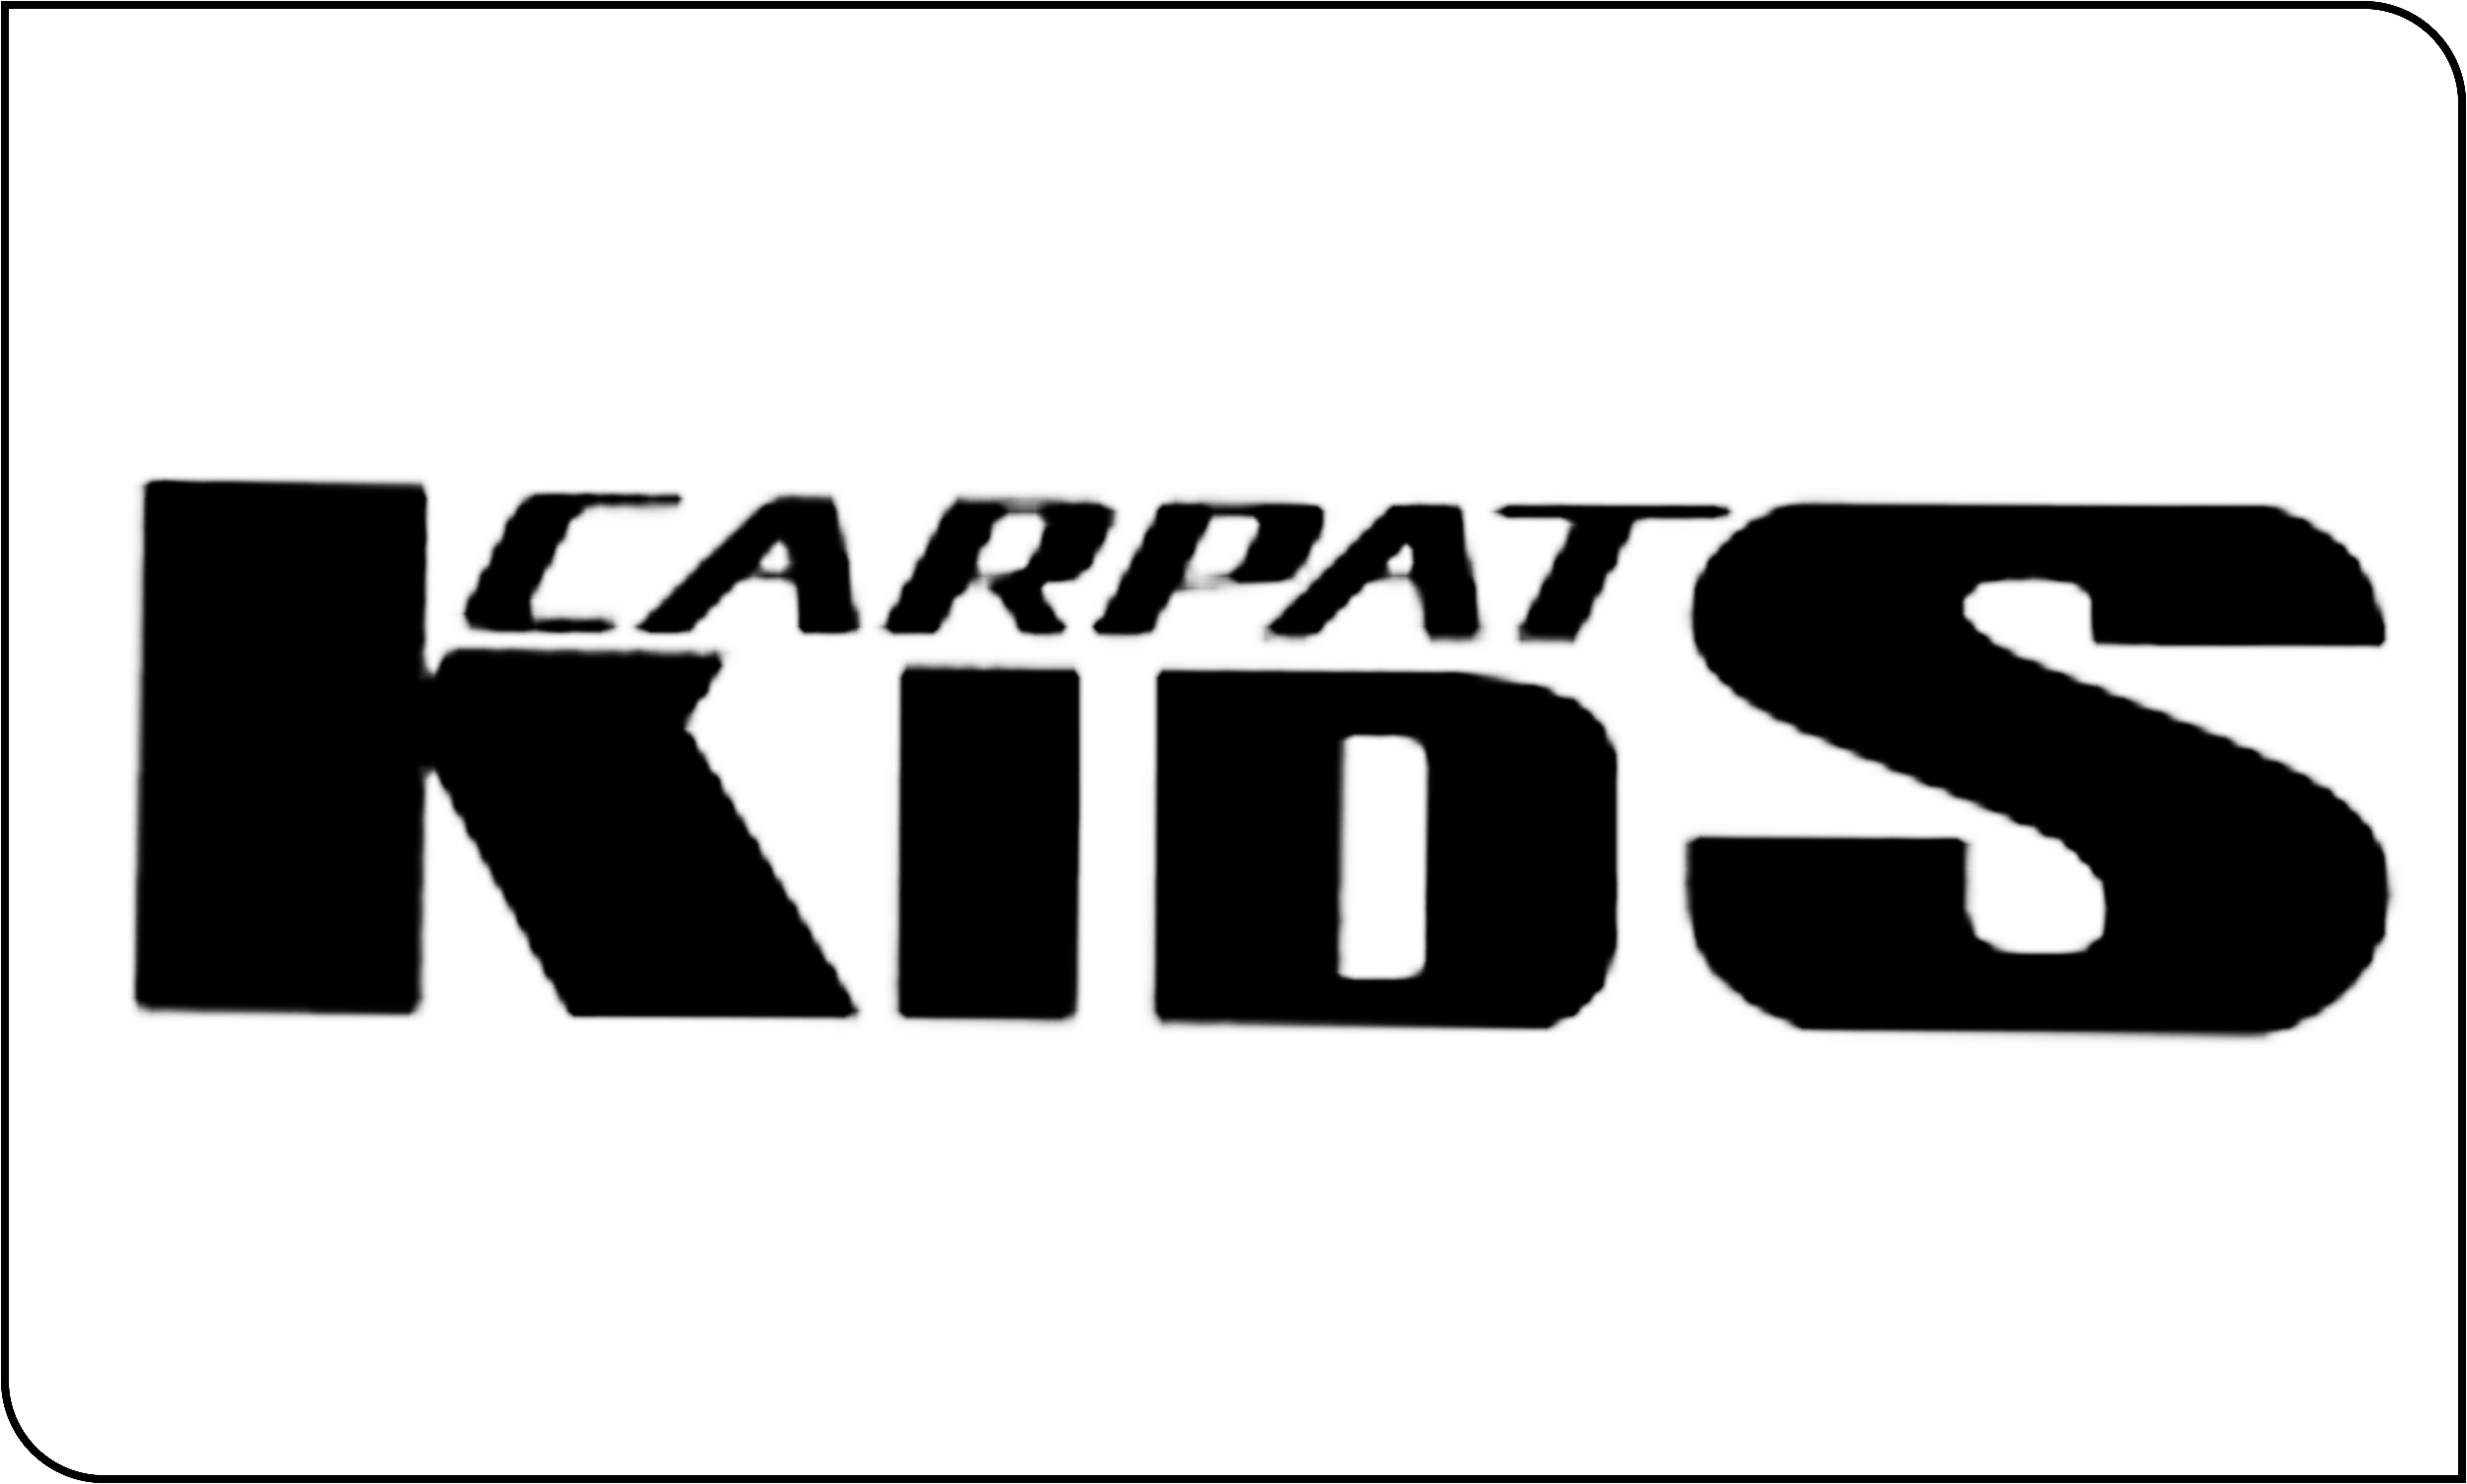 CARPAT KIDS